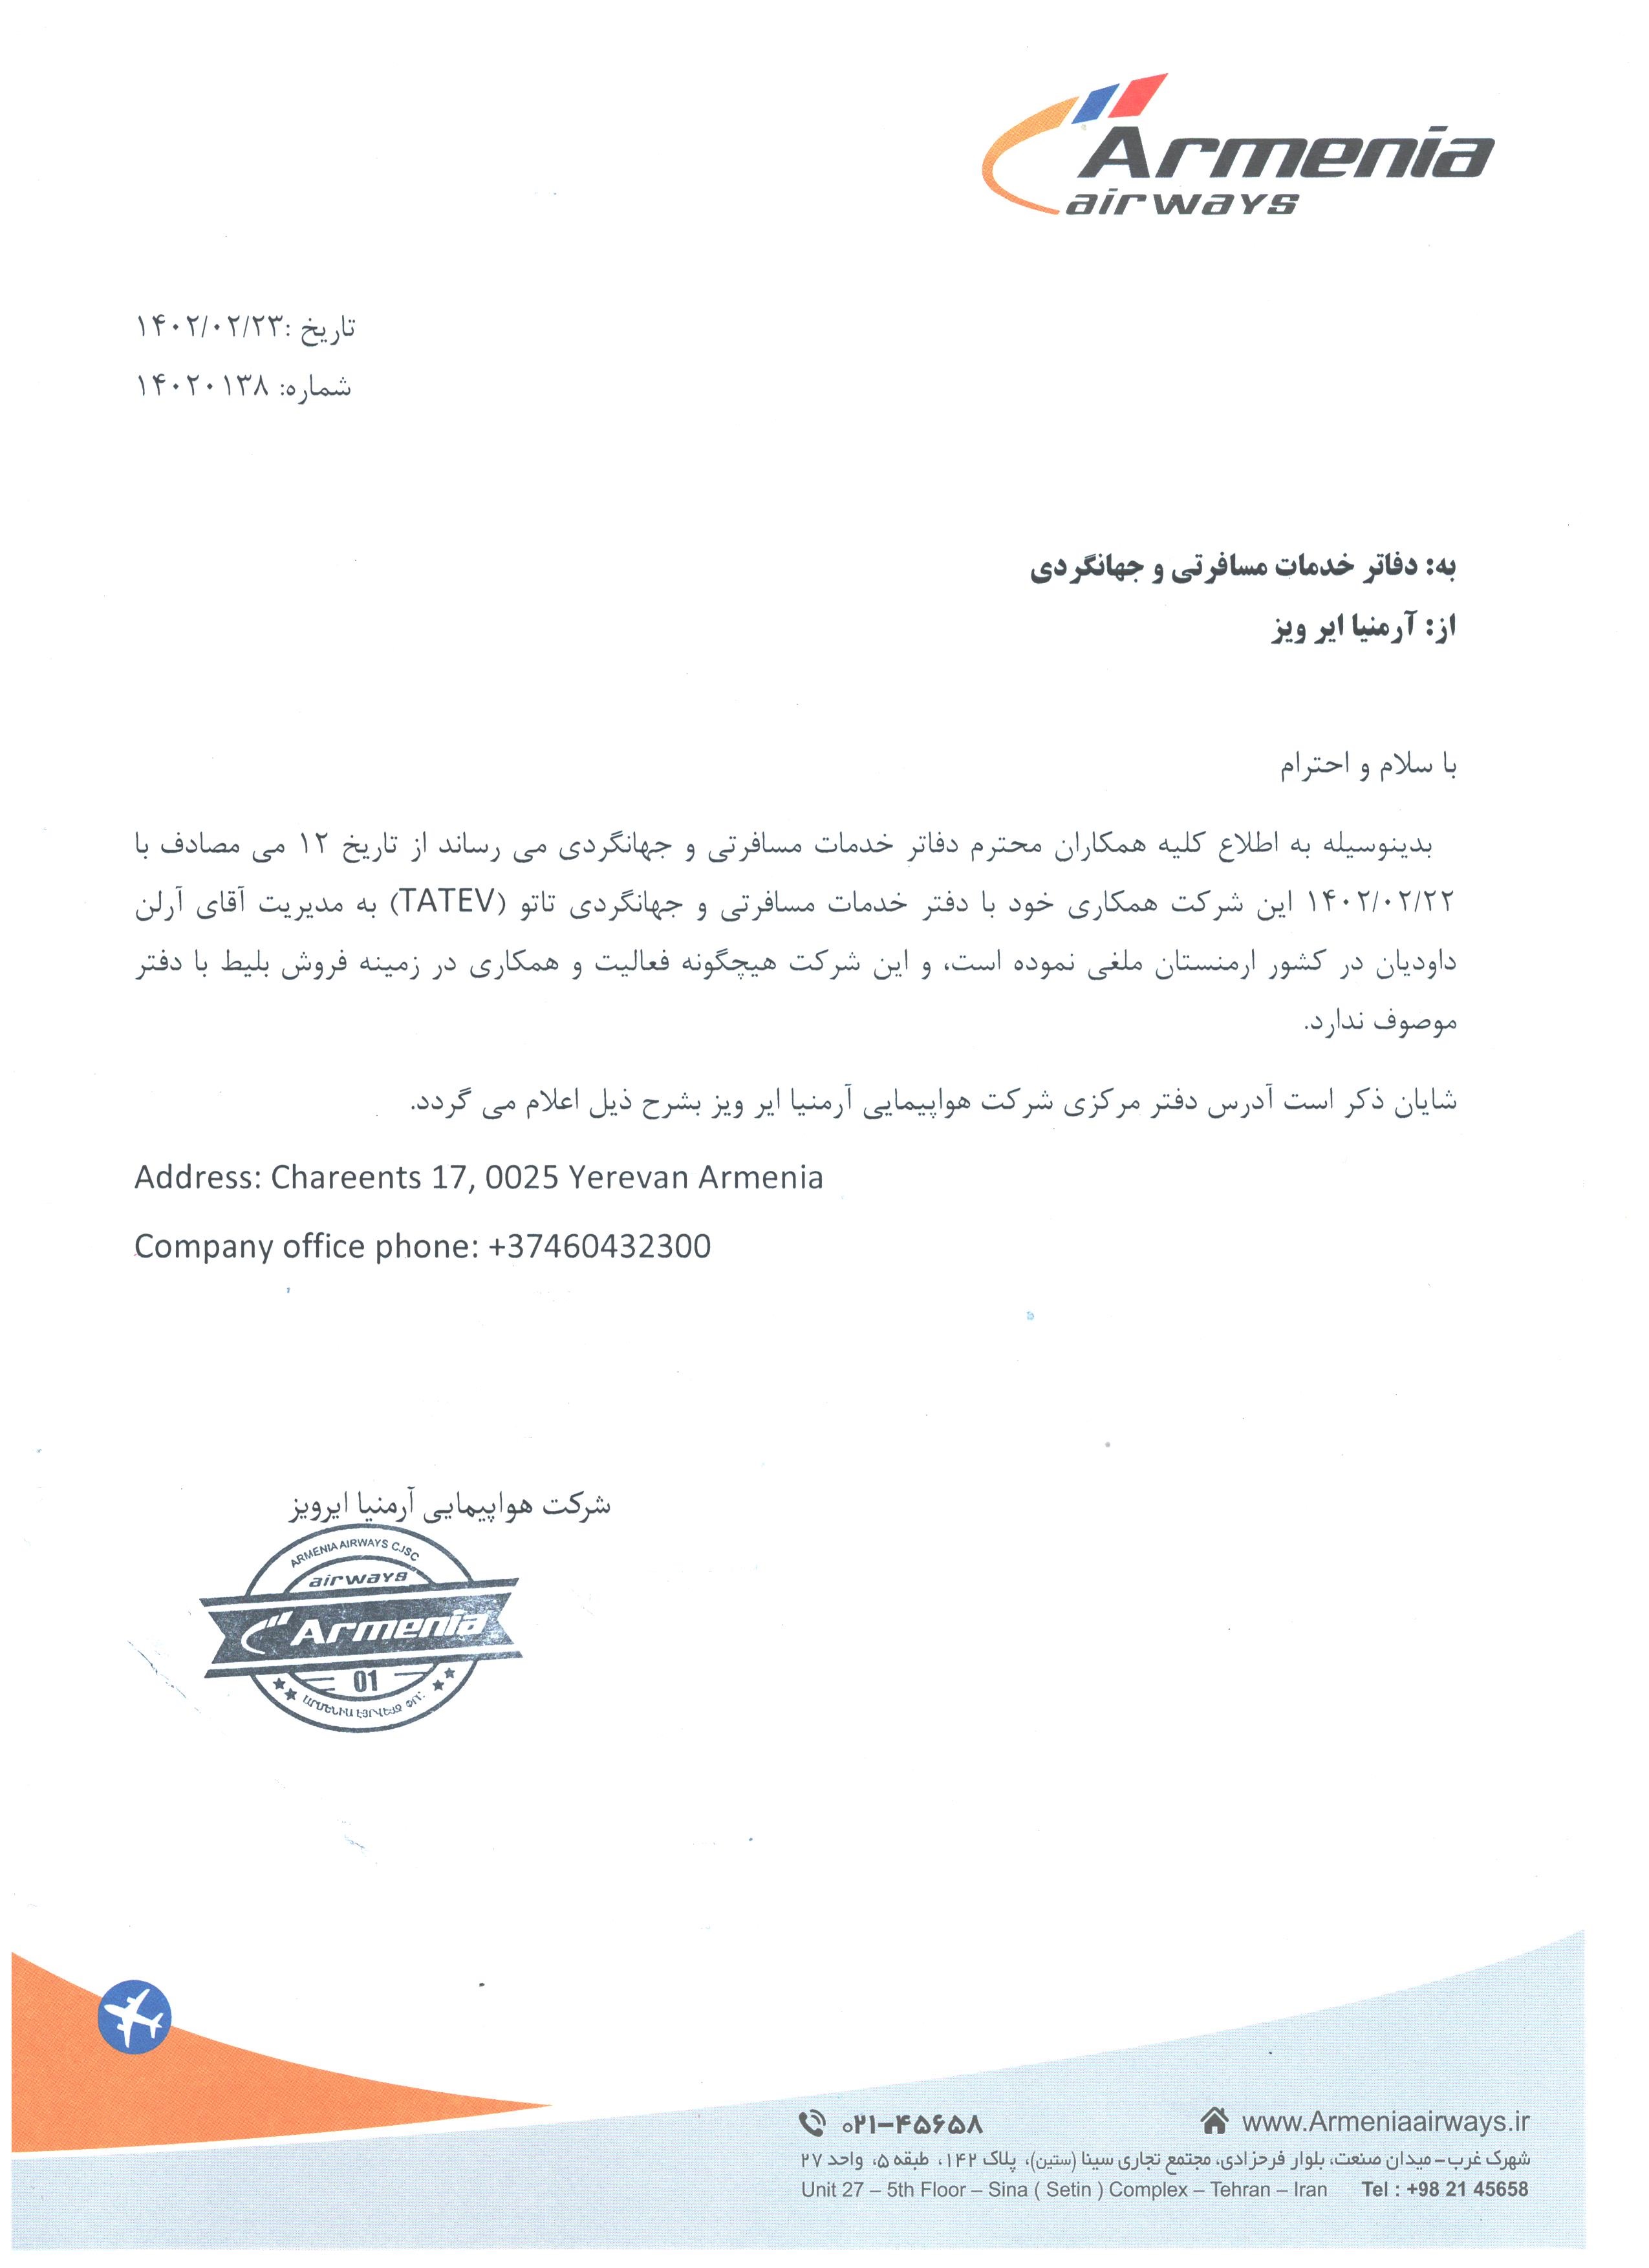 بخشنامه و اطلاعیه   هواپیمایی آرمنیا ایرویز درباره قطع همکاری با شرکت تاتو در کشور ارمنستان 14020138